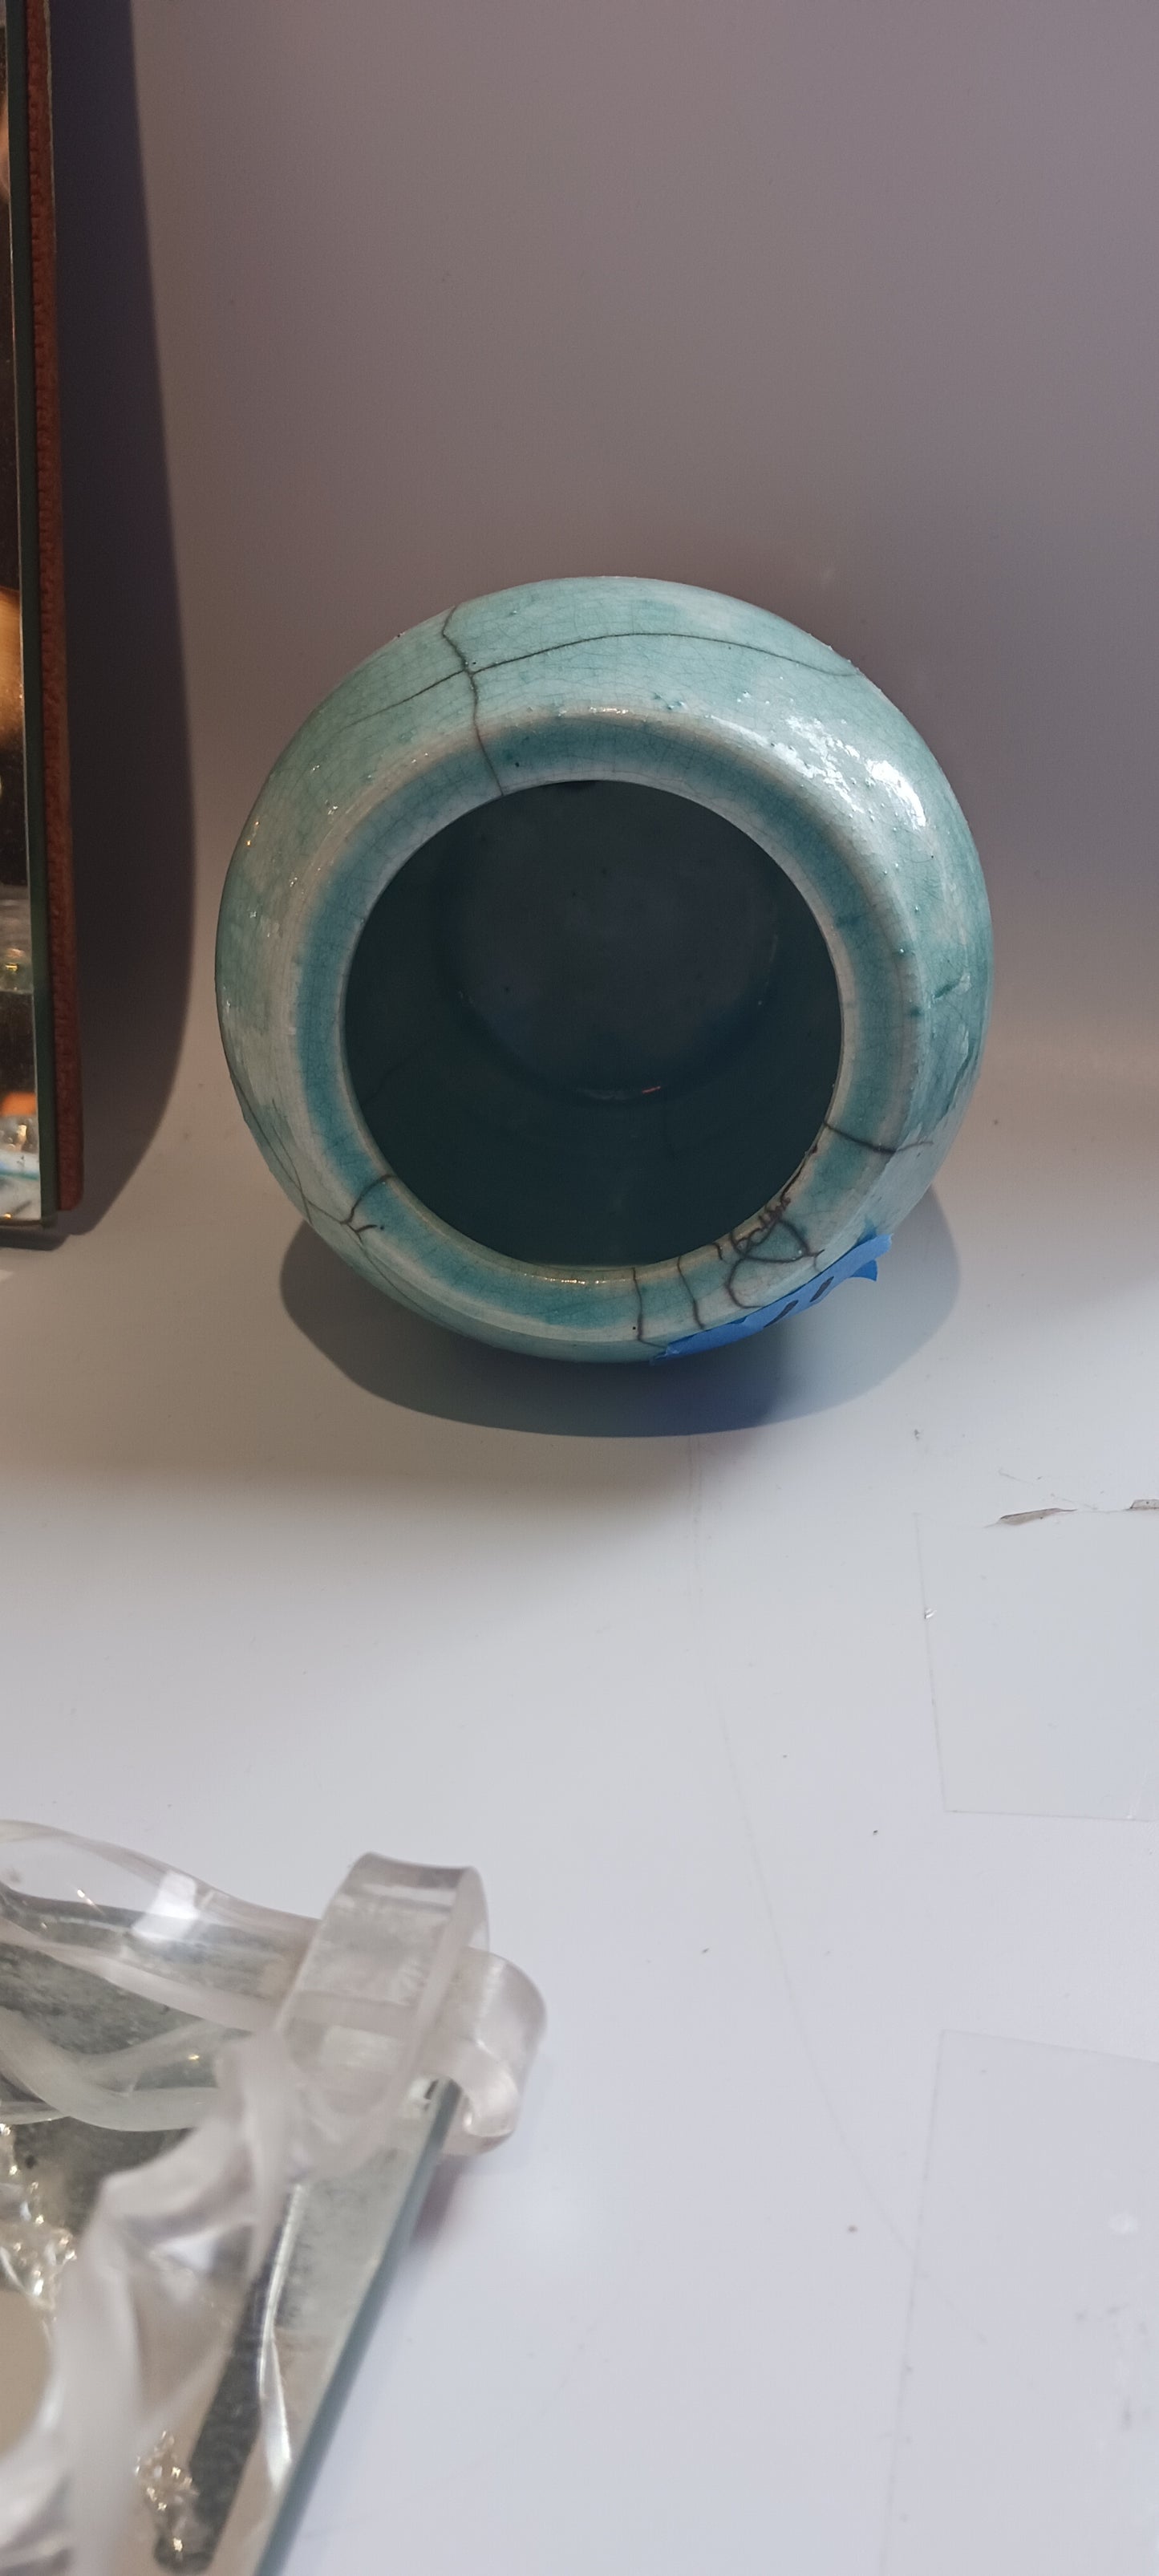 Turquoise Asian Raku Pot 4"x4"